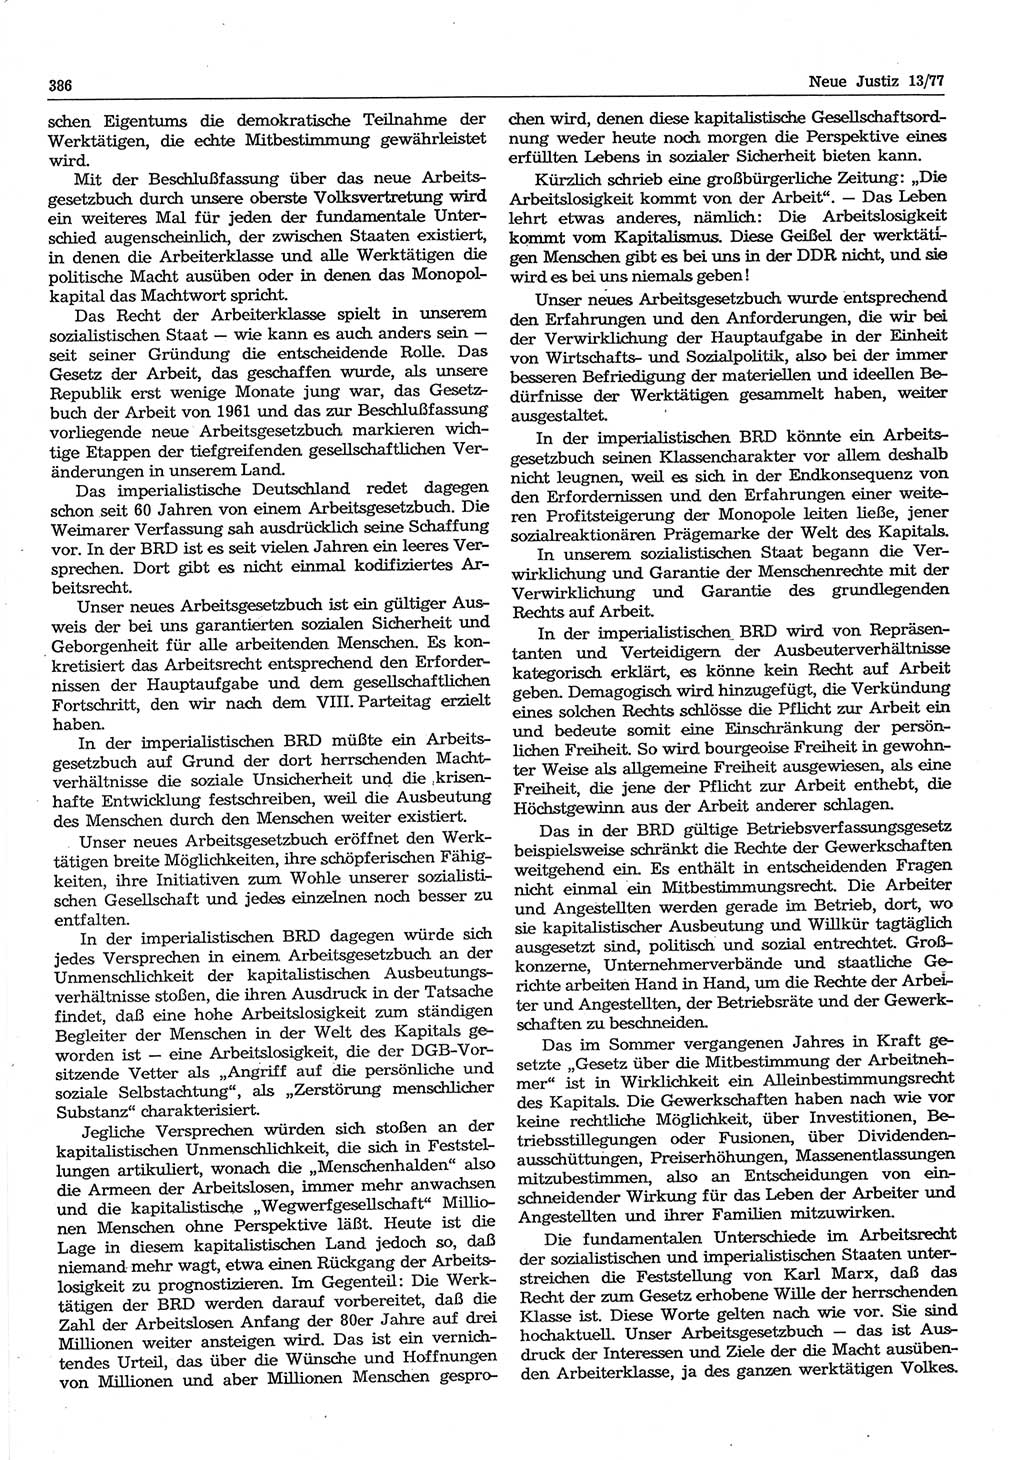 Neue Justiz (NJ), Zeitschrift für Recht und Rechtswissenschaft-Zeitschrift, sozialistisches Recht und Gesetzlichkeit, 31. Jahrgang 1977, Seite 386 (NJ DDR 1977, S. 386)